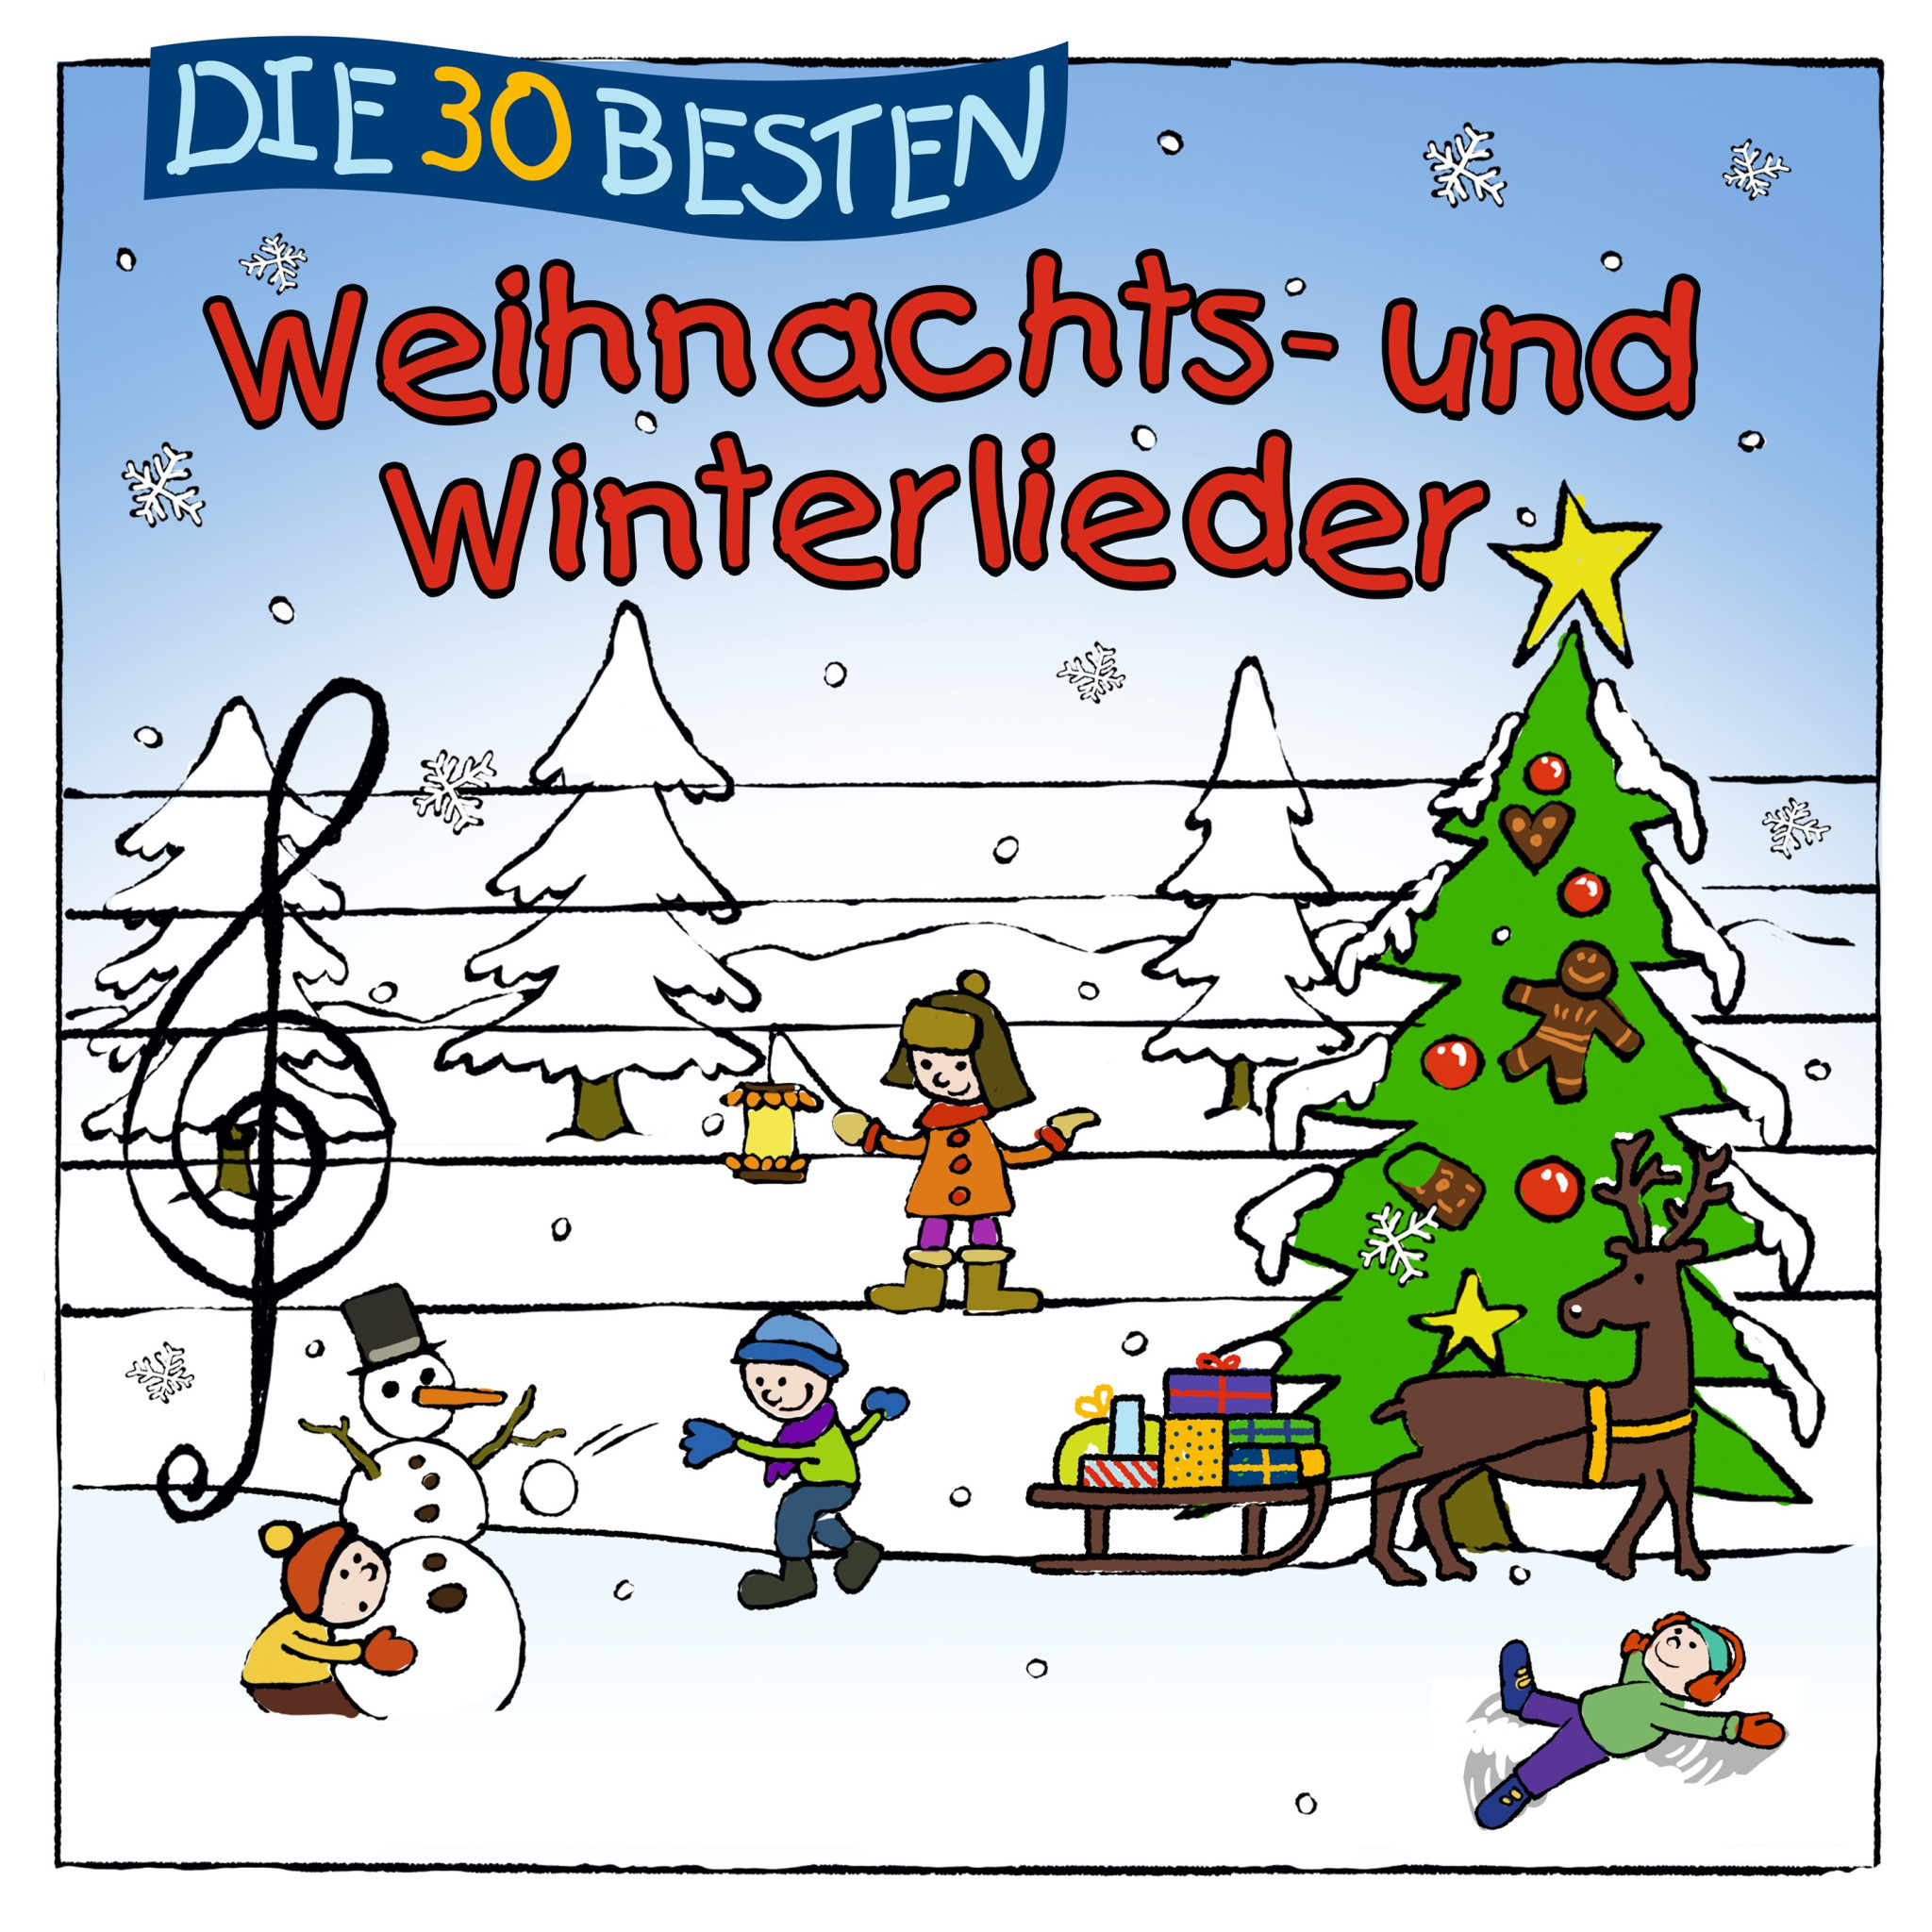 LP Cover Die 30 besten Weihnachts- und Winterlieder.jpg